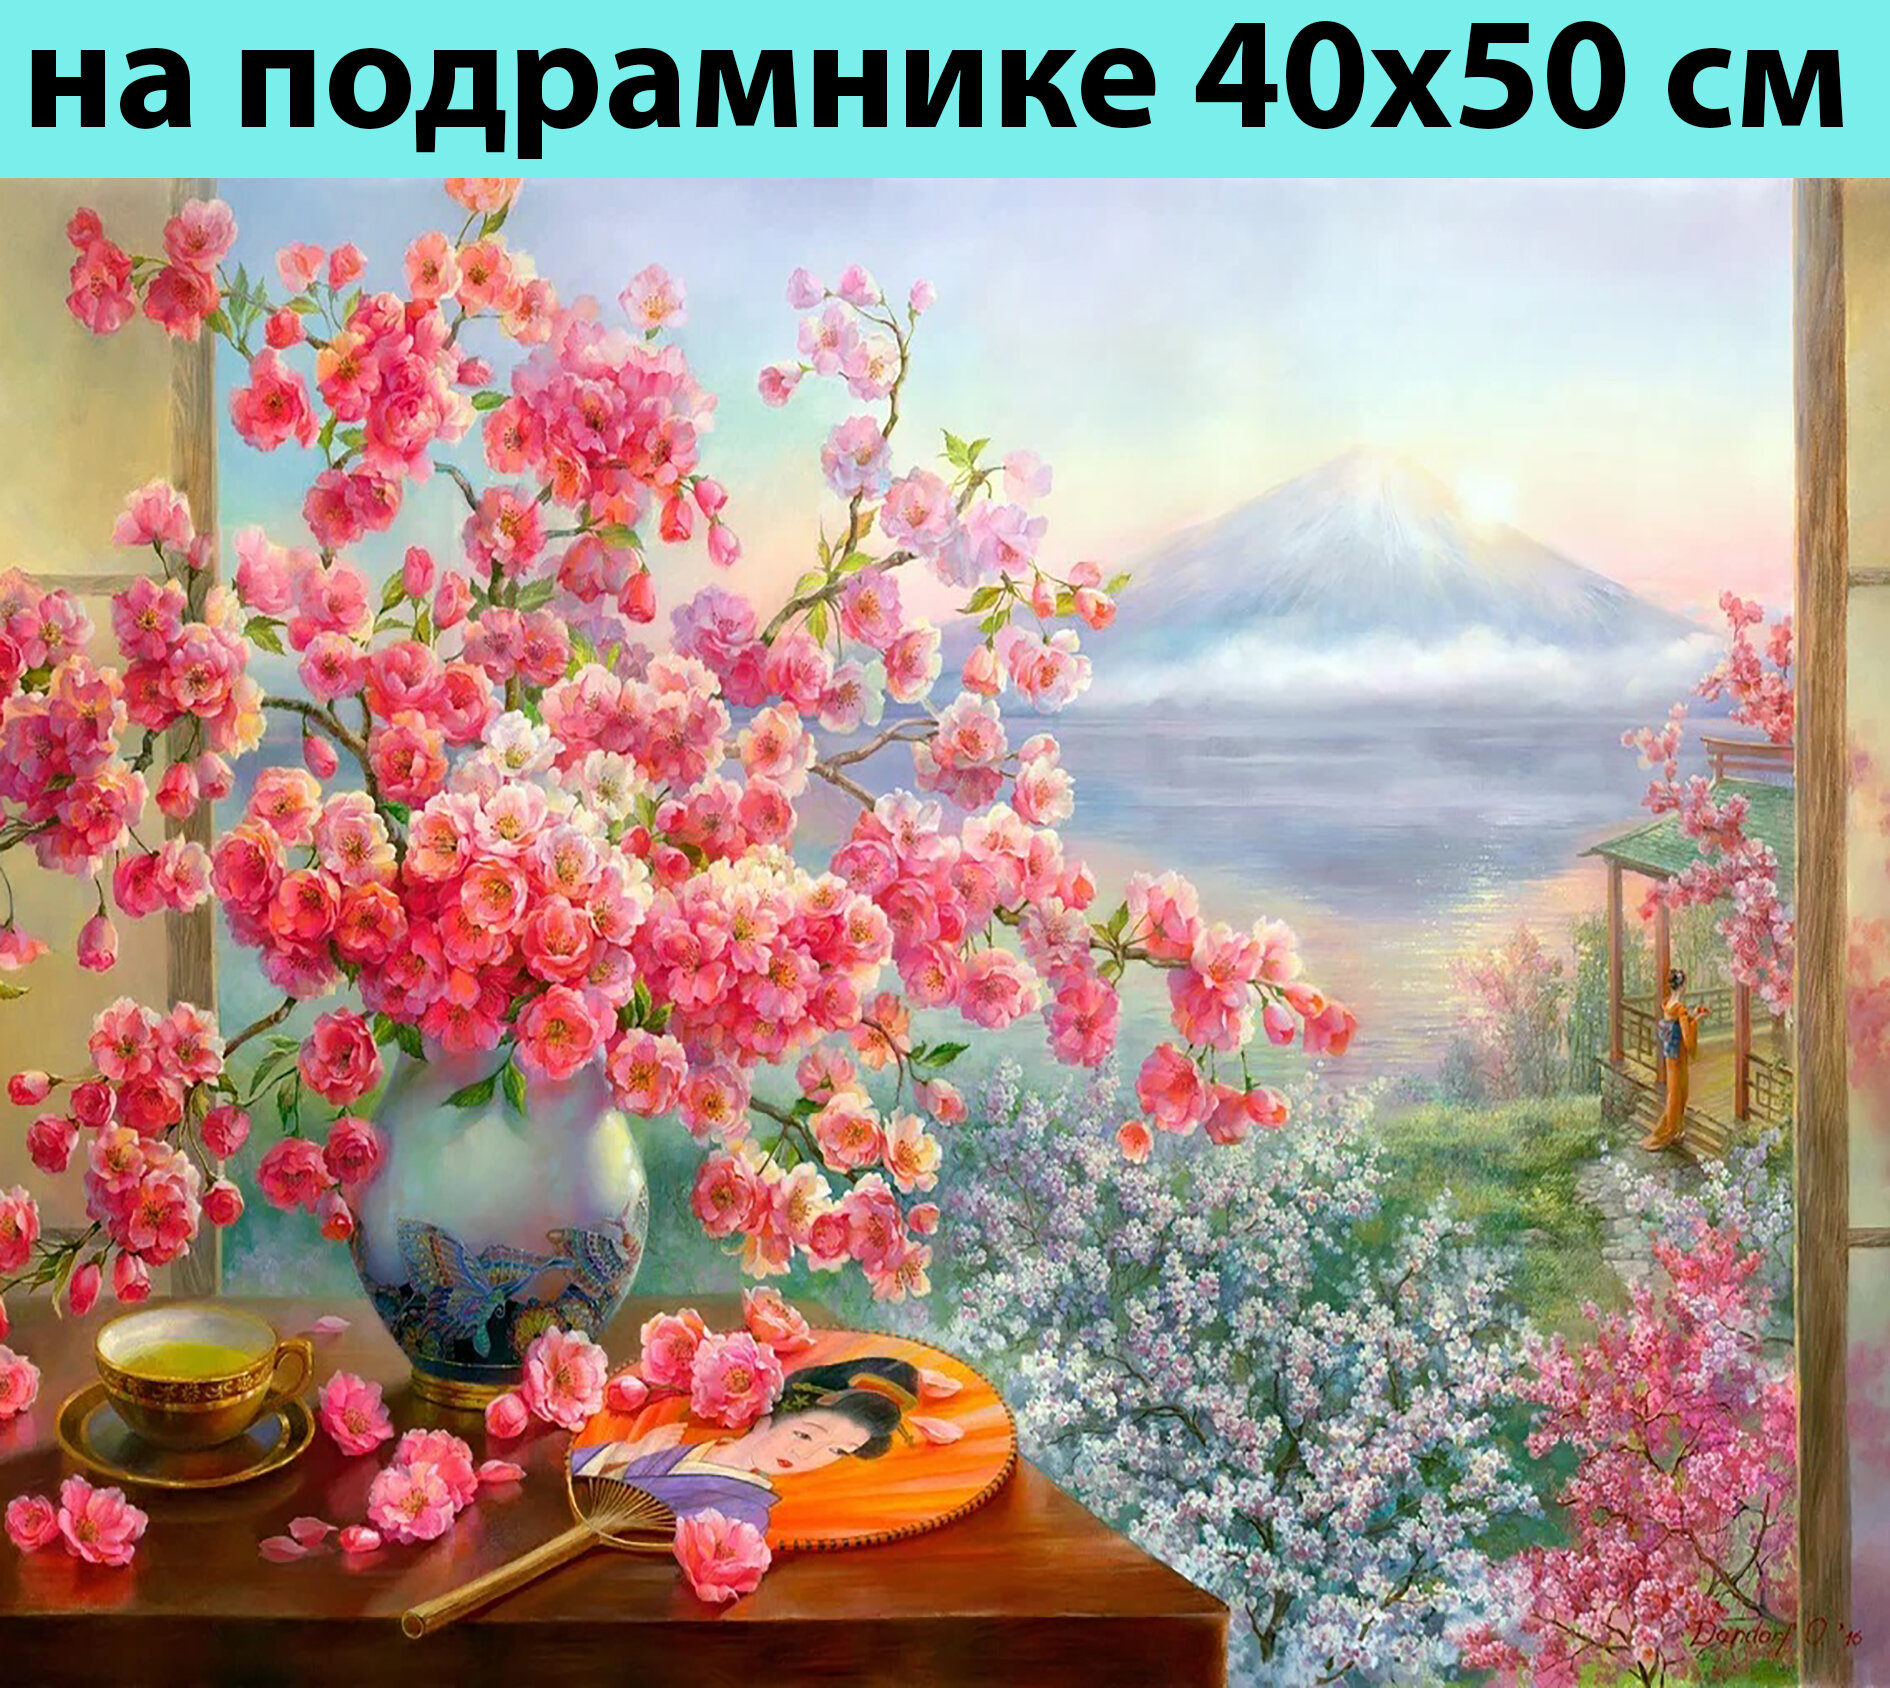 Картина по номерам на подрамнике 40х50 Природа букет сакуры, Живопись, Картина красками, товары для рисования для детей и взрослых